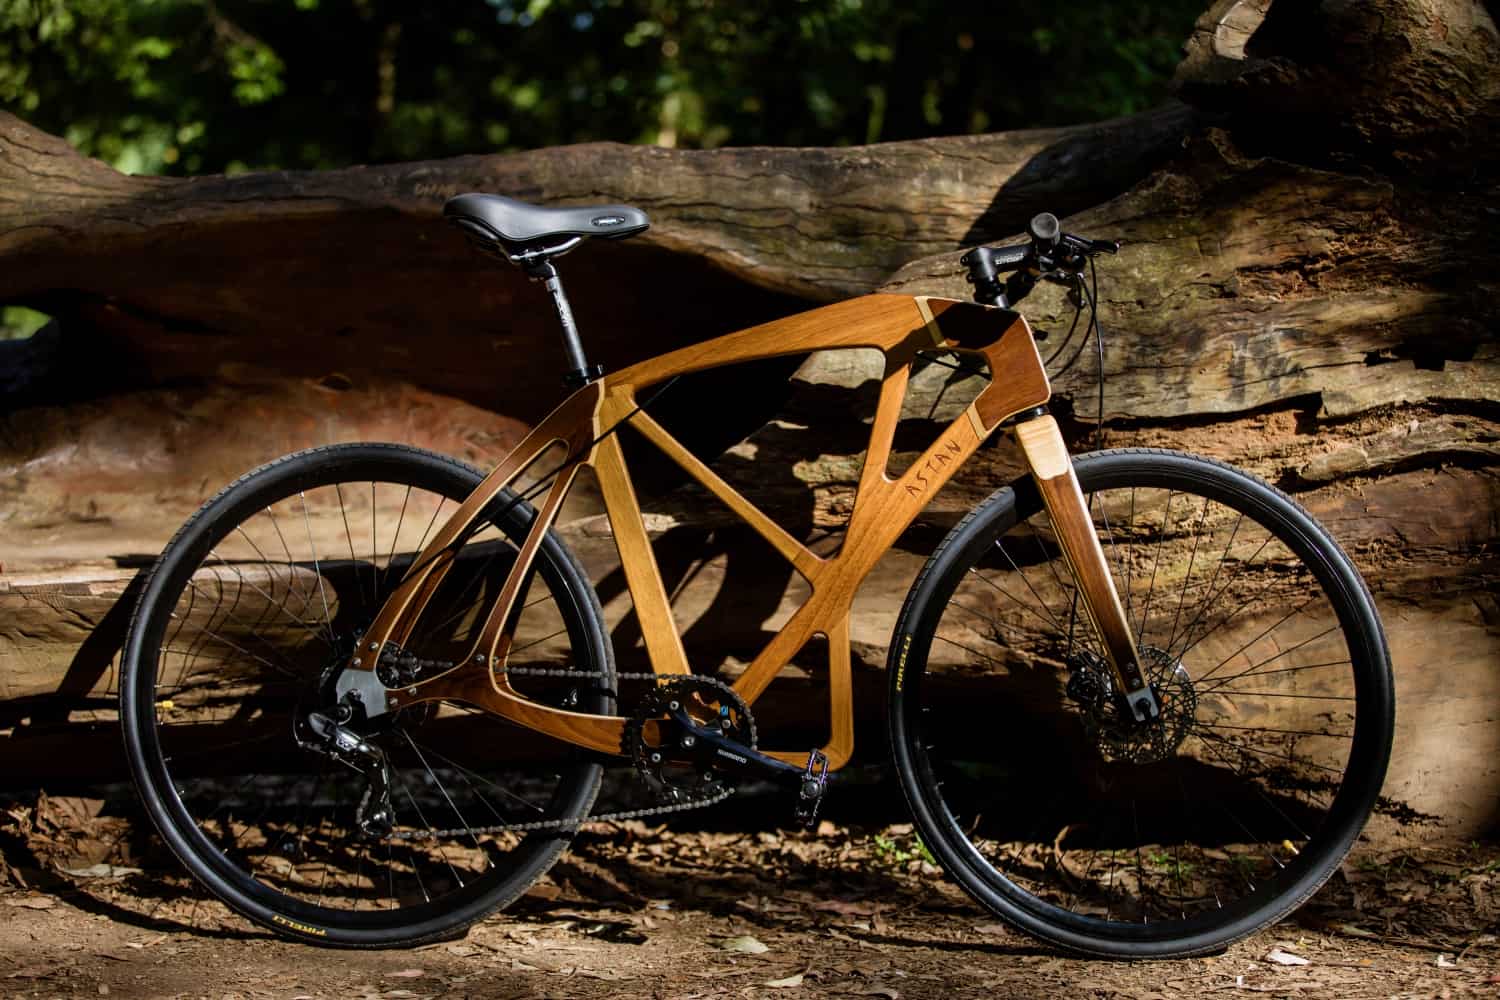 Bike de madeira chama atenção à causa sustentável